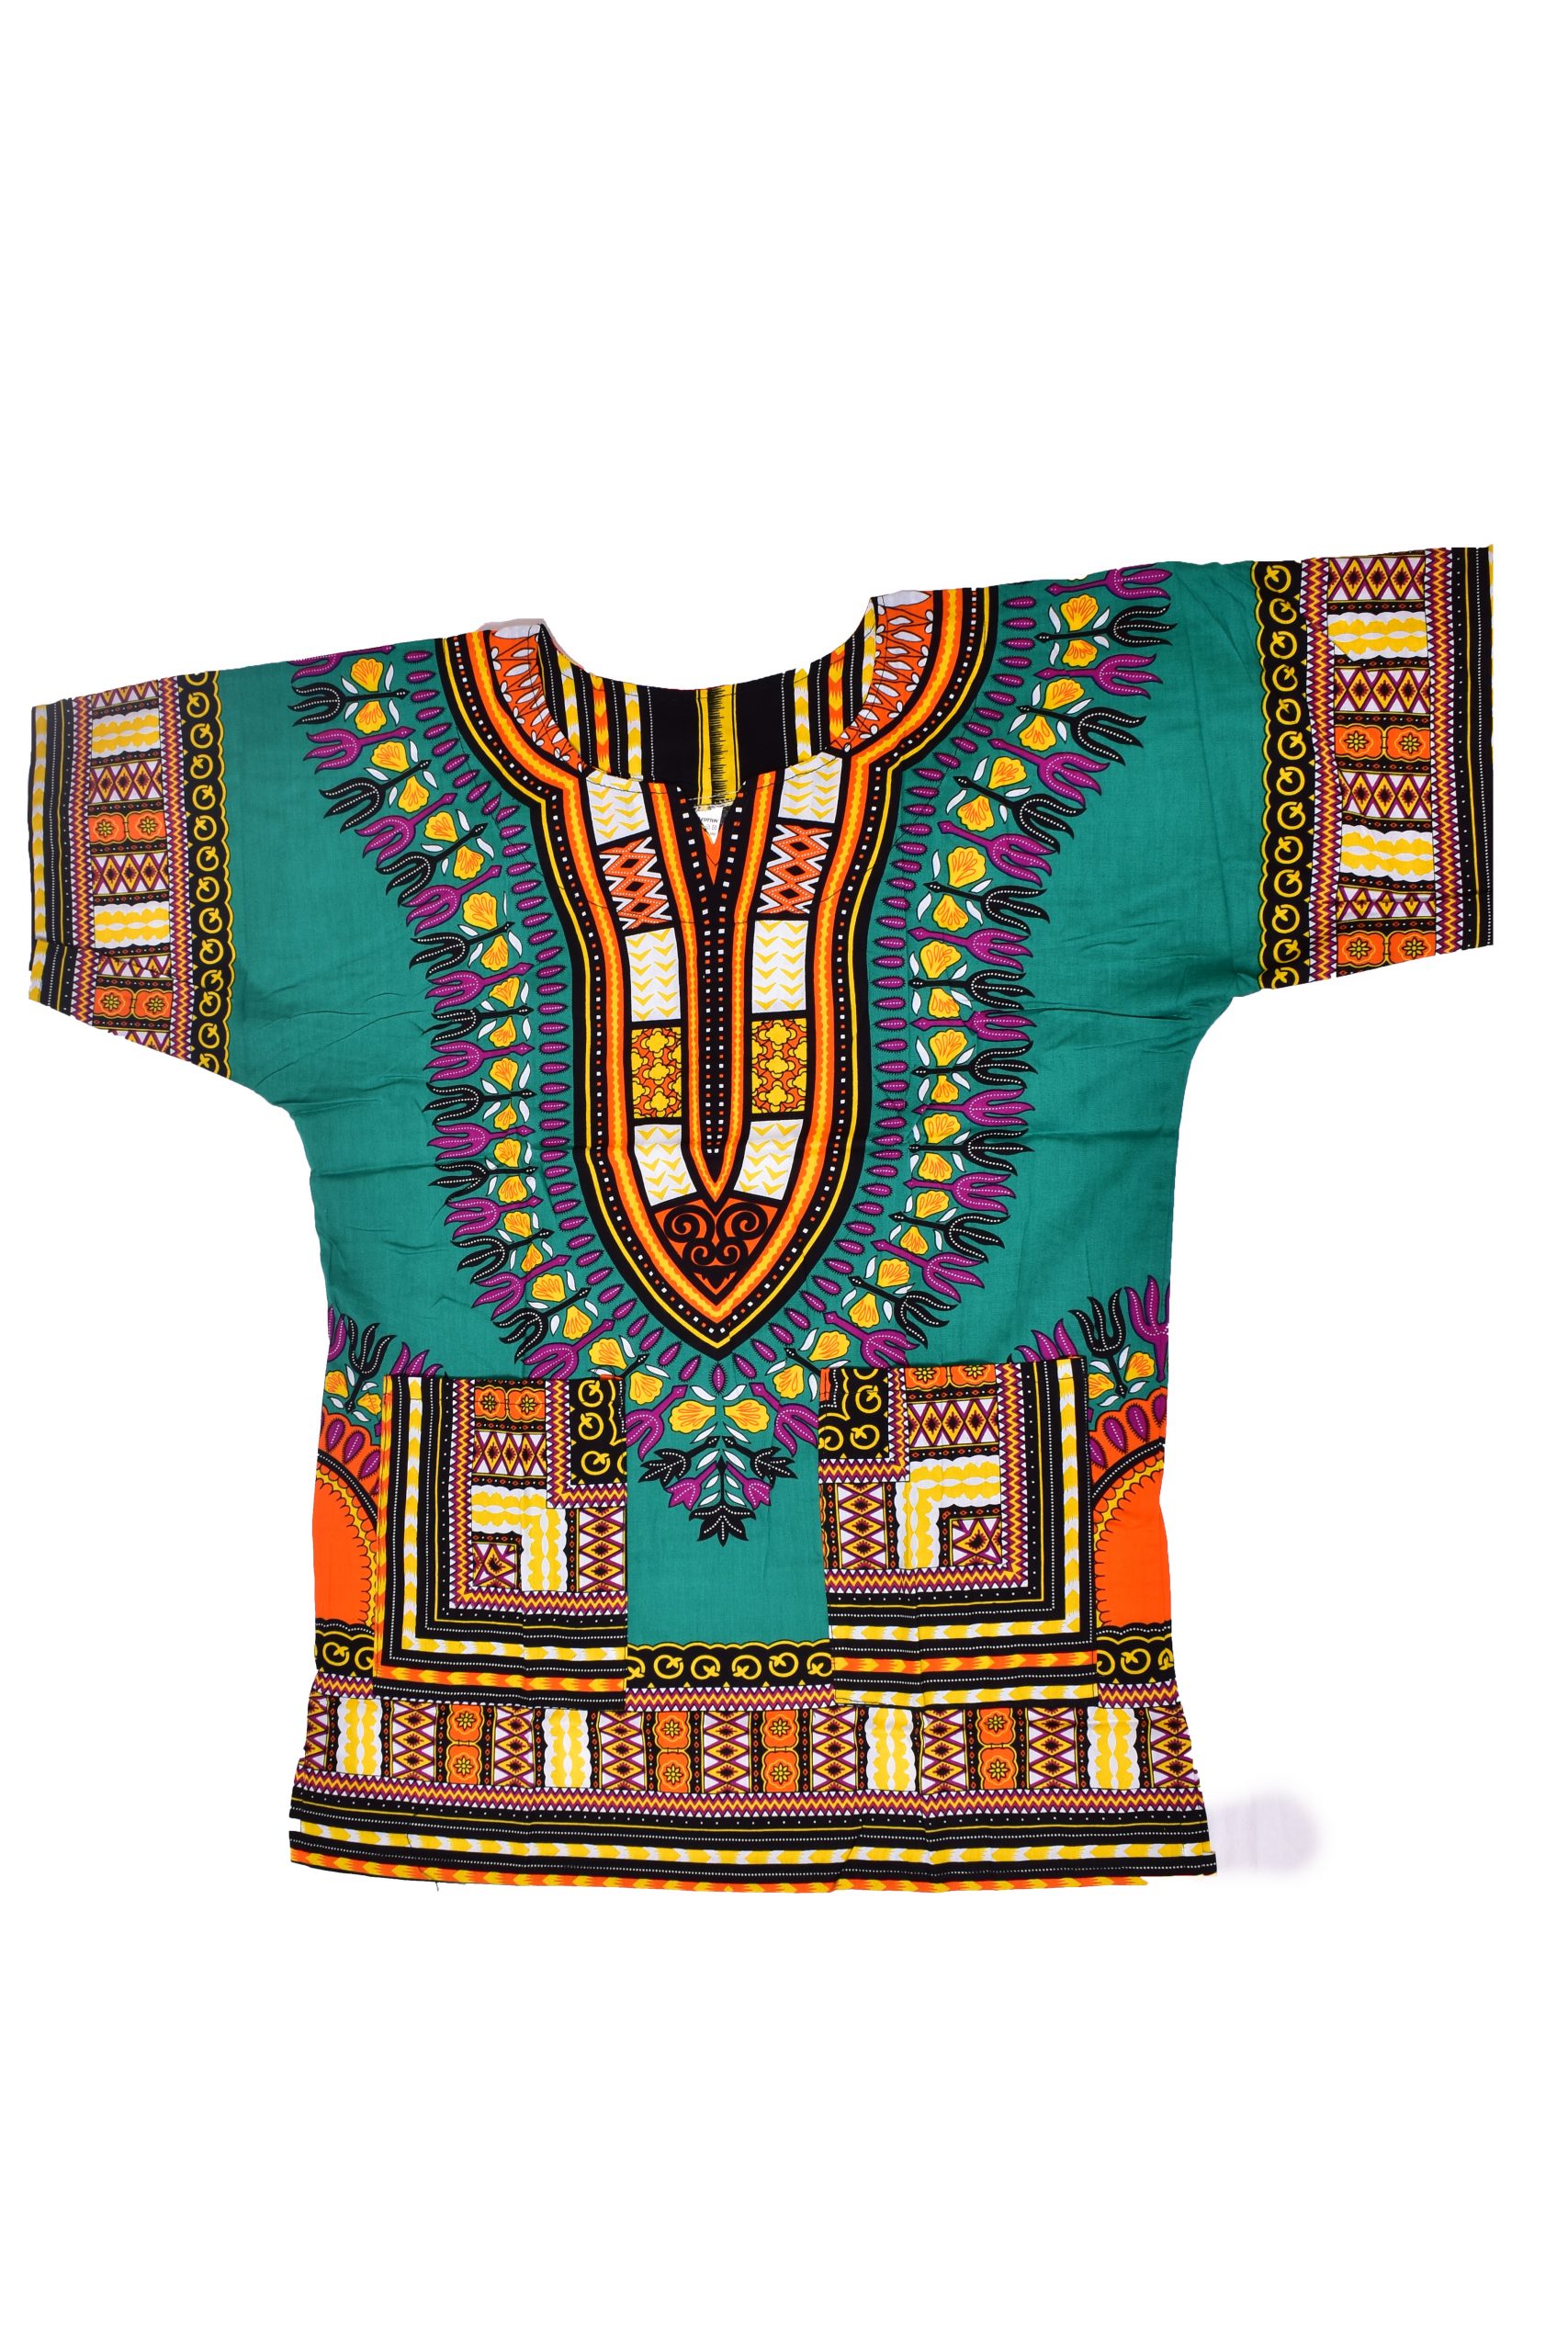 Dashiki Shirts - African Bravo Creative